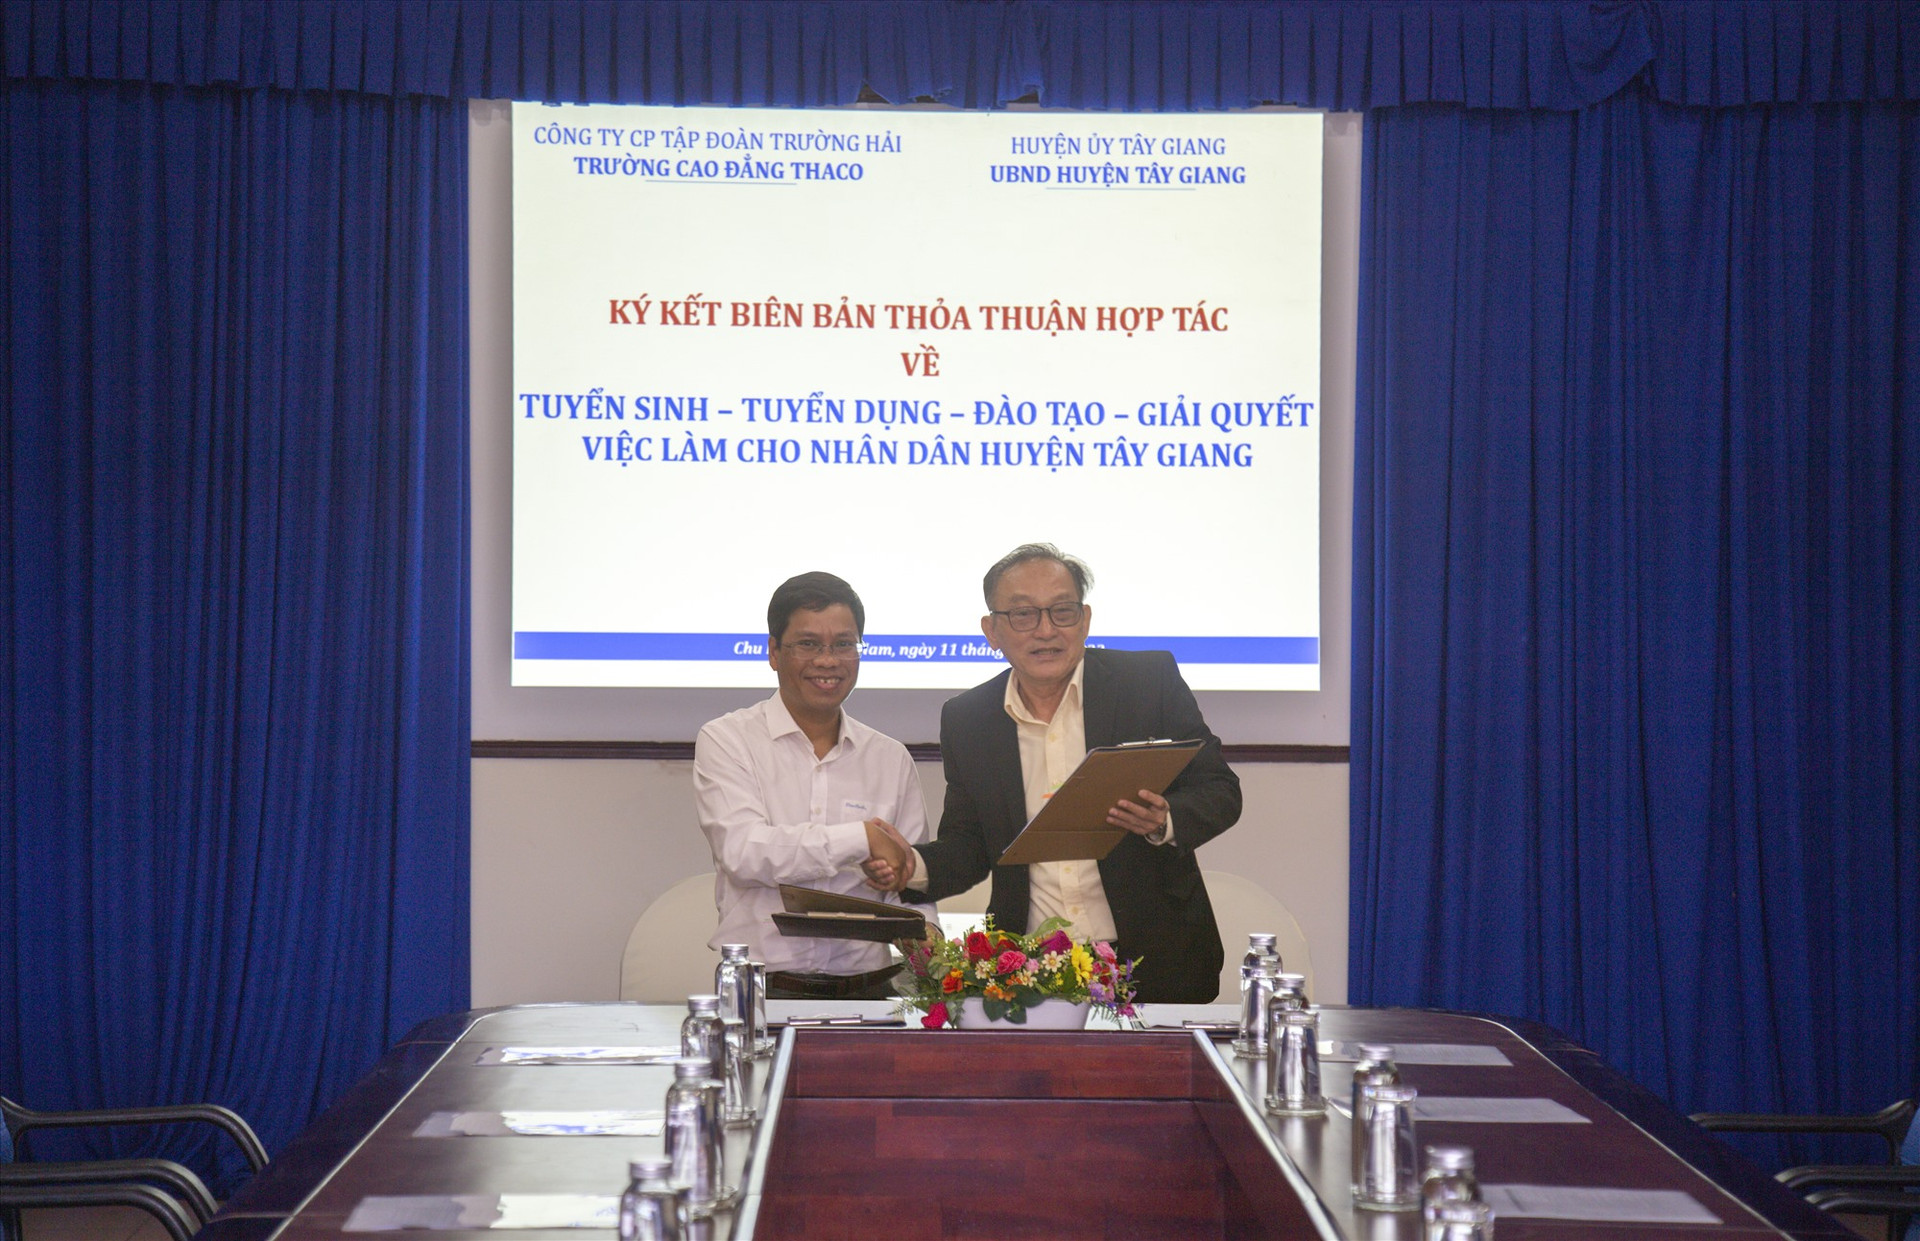 Lãnh đạo Trường CĐ THACO và lãnh đạo huyện Tây Giang ký kết Biên bản thỏa thuận hợp tác về tuyển sinh, tuyển dụng lao động huyện Tây Giang.